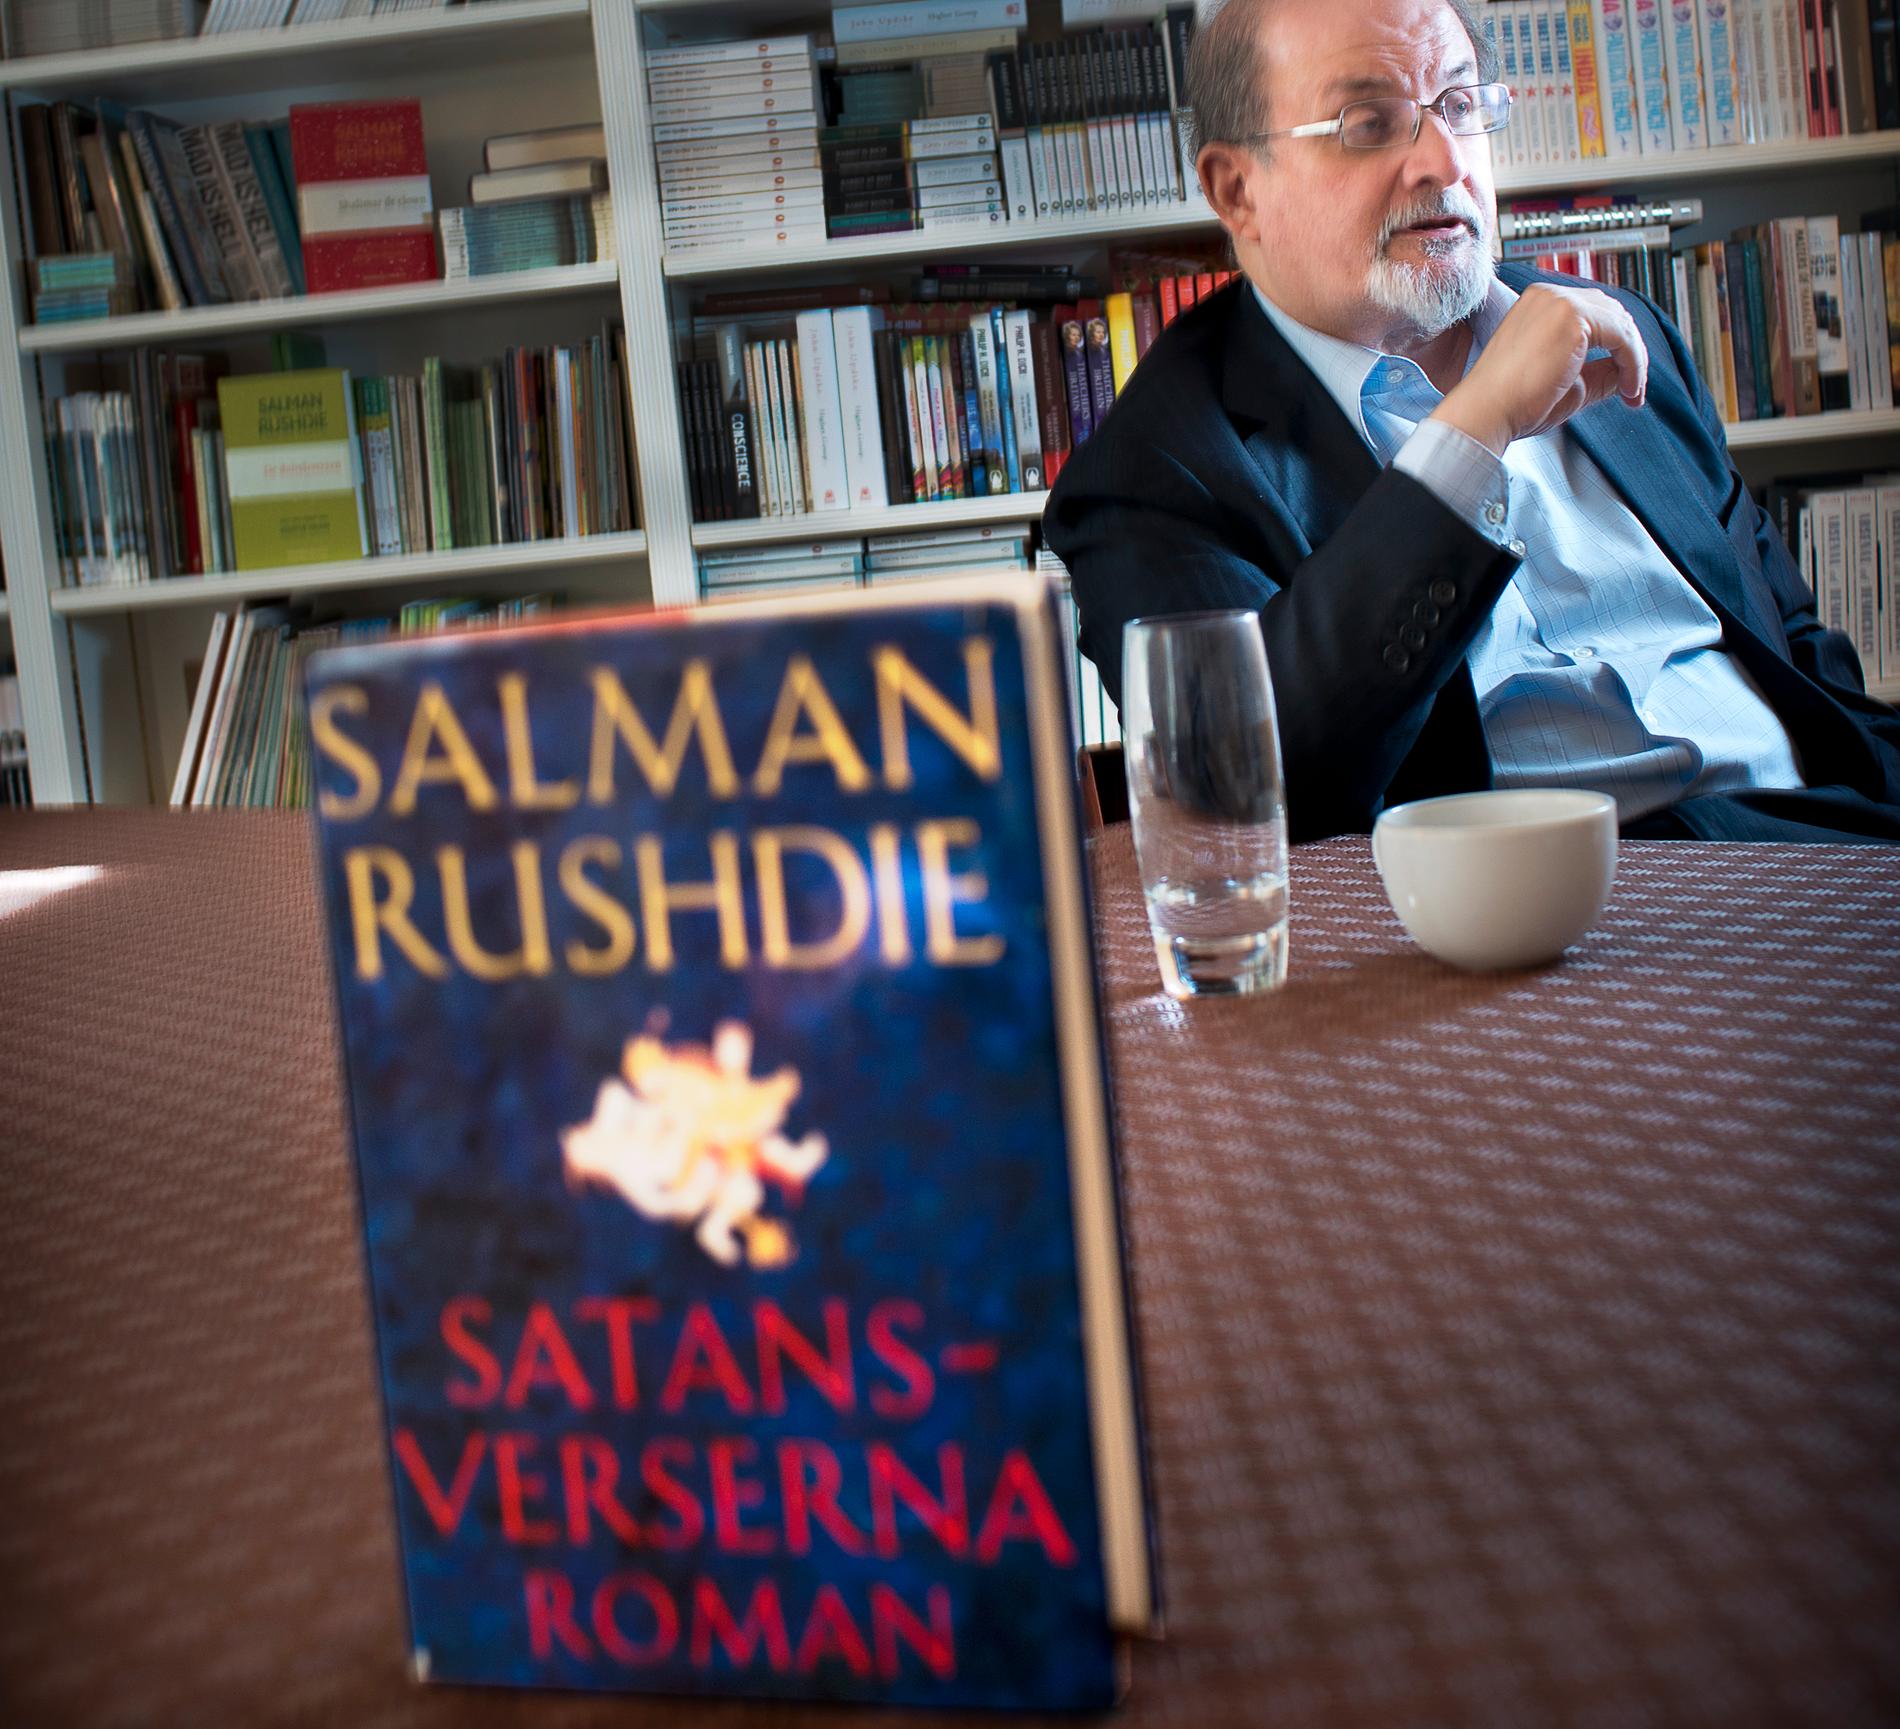 Salman Rushdies Satansverserna publicerades 1988. Boken är bannlyst i den muslimska världen, eftersom man anser att boken ger en felaktig bild av profeten Muhammed. En fatwa utfärdades, med budskapet var att författaren måste avrättas eftersom boken var hädisk mot islam. Rushdie har levt med ett pris på sitt huvud sedan dess.